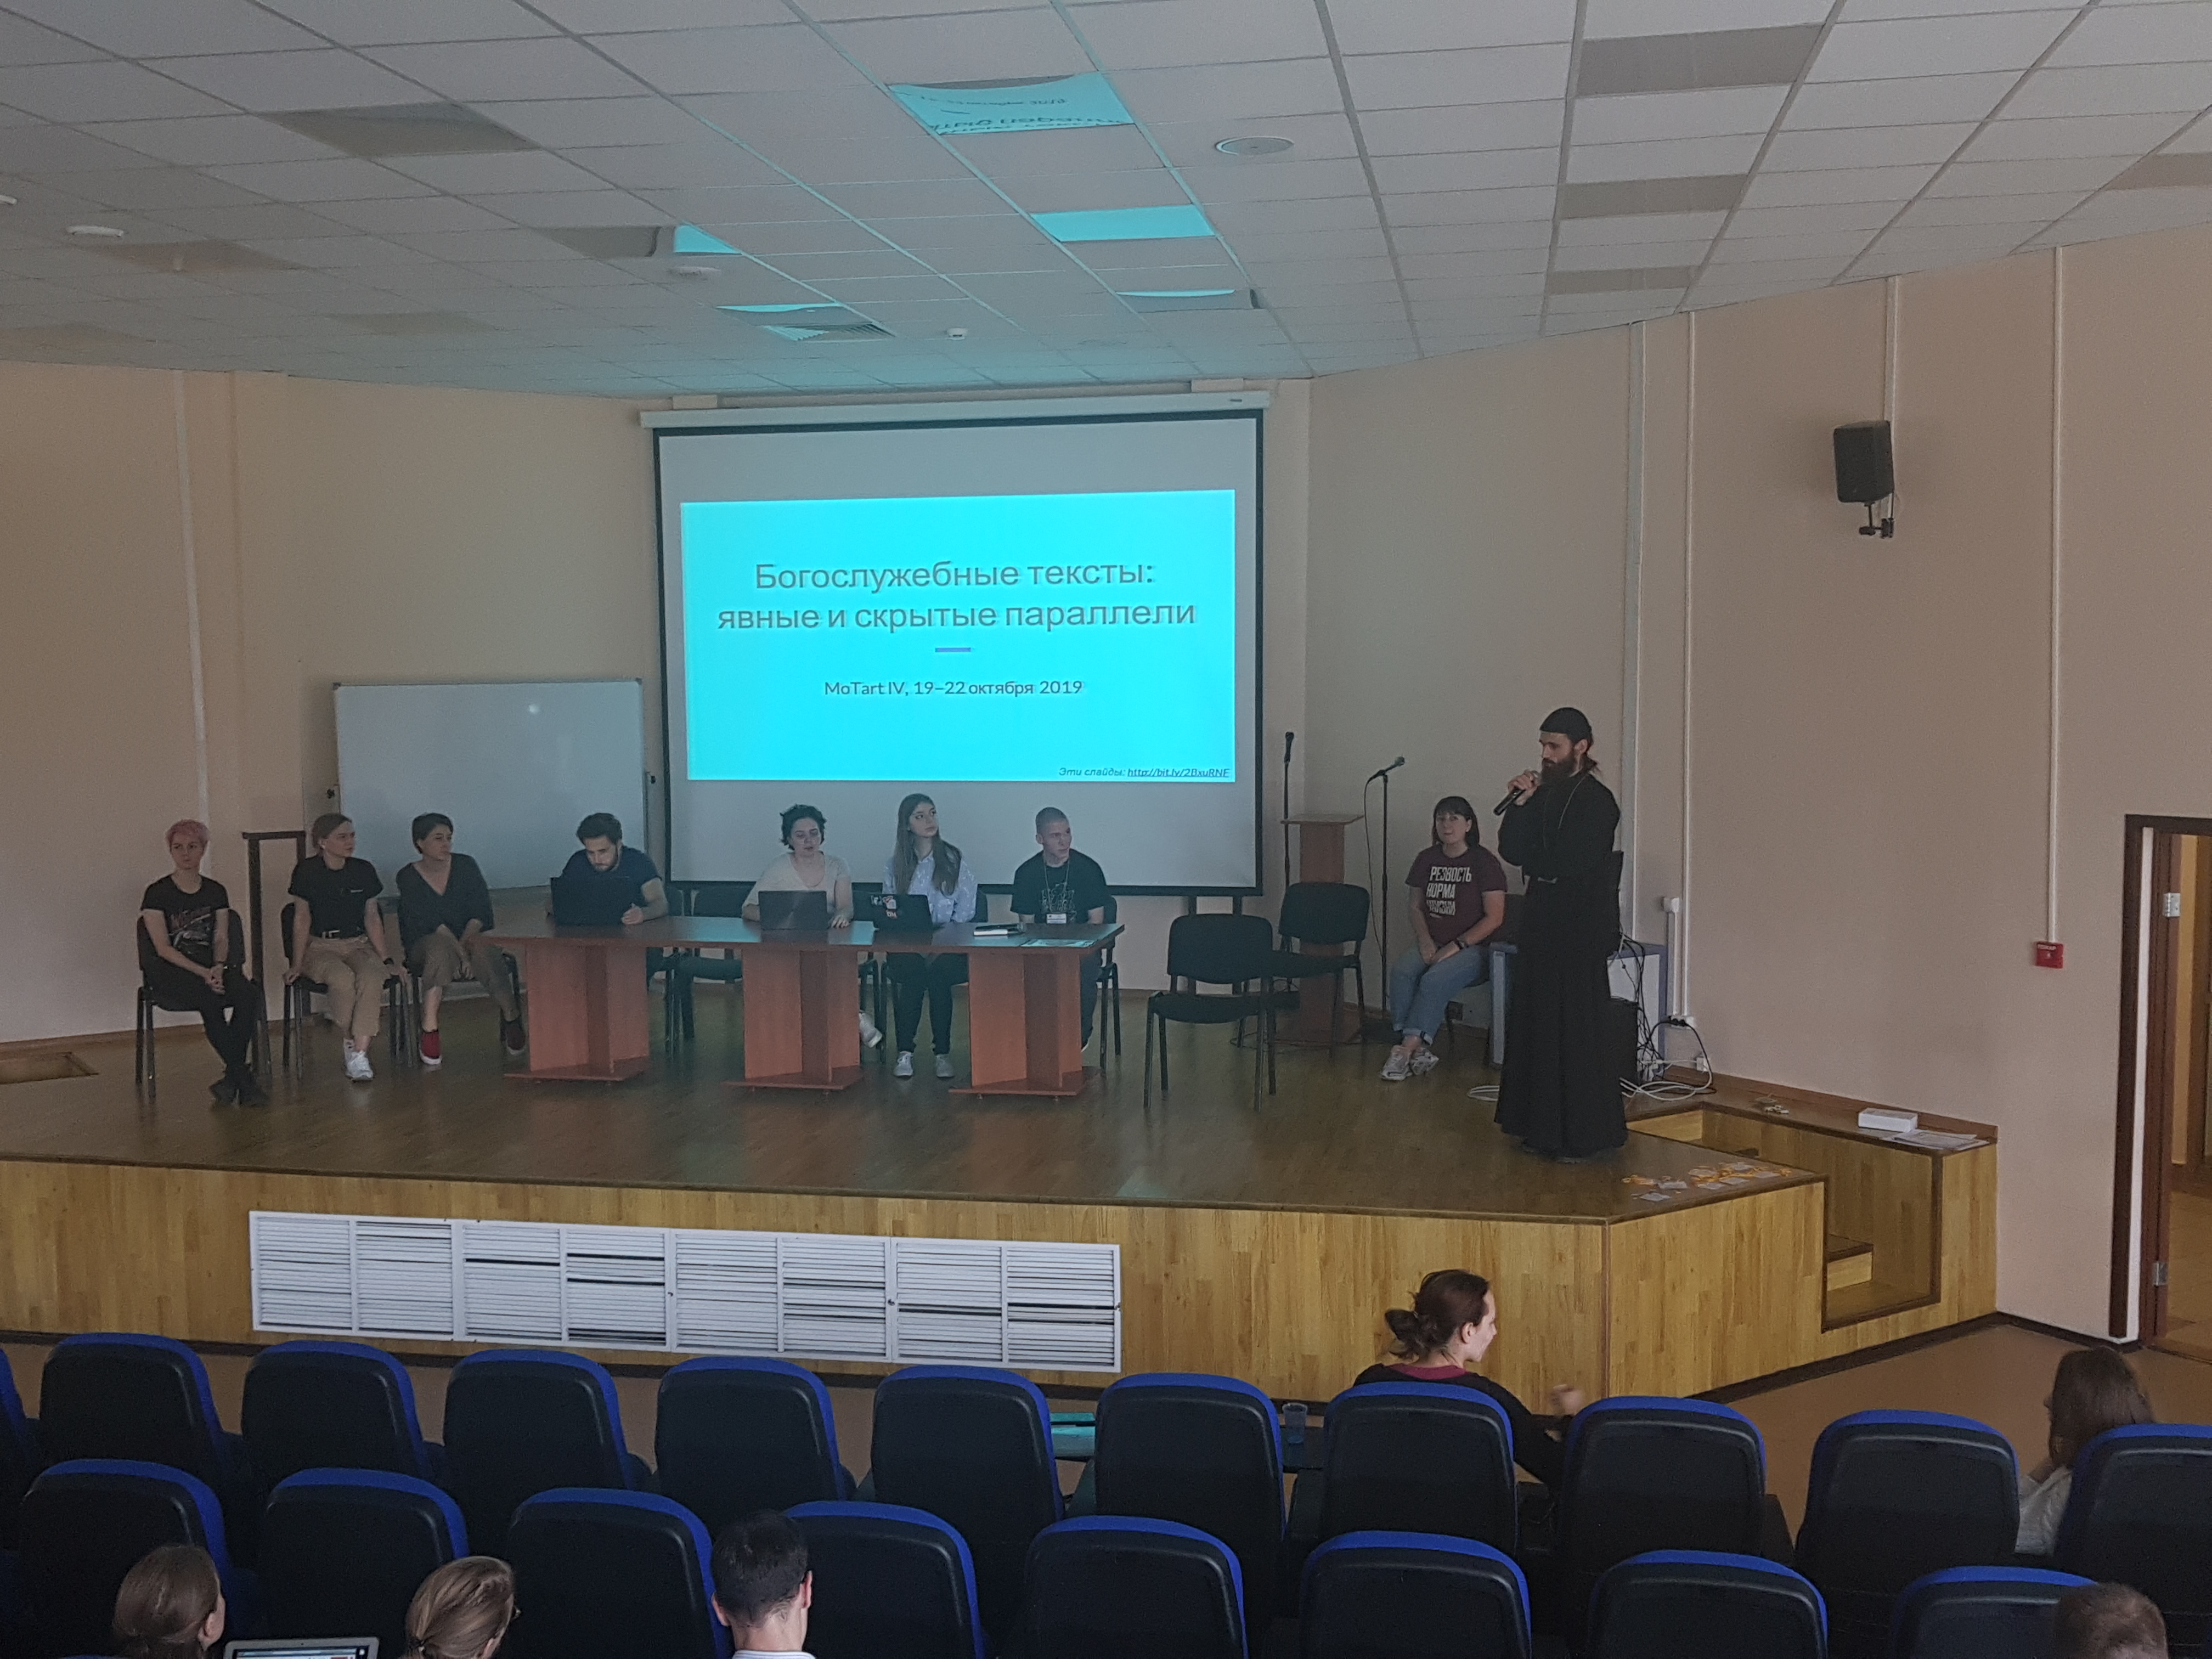 Итоговая презентация команды "Богослужебные тексты" на IV Московско-тартуской школе